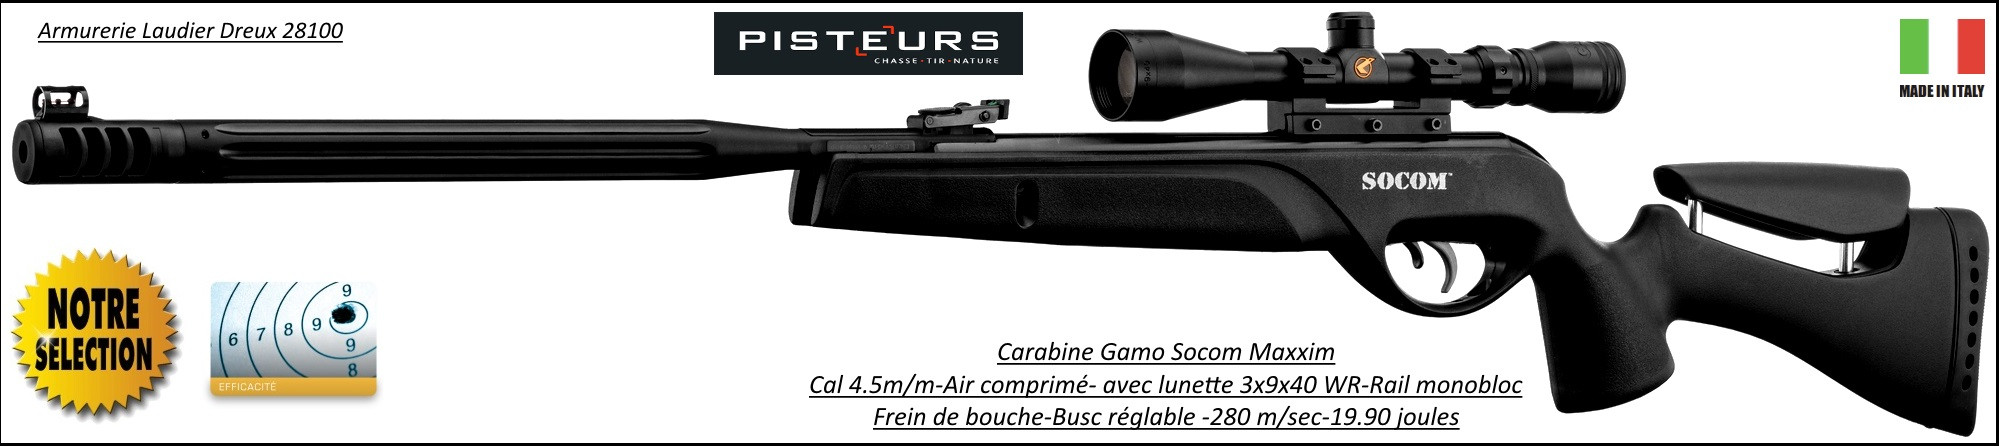 Carabine-Gamo-socom-Maxxim-air comprimé-Cal 4.5mm -19.90 joules+lunette 3x9x40 WR+frein bouche + busc réglable- Promotion-Ref 30697